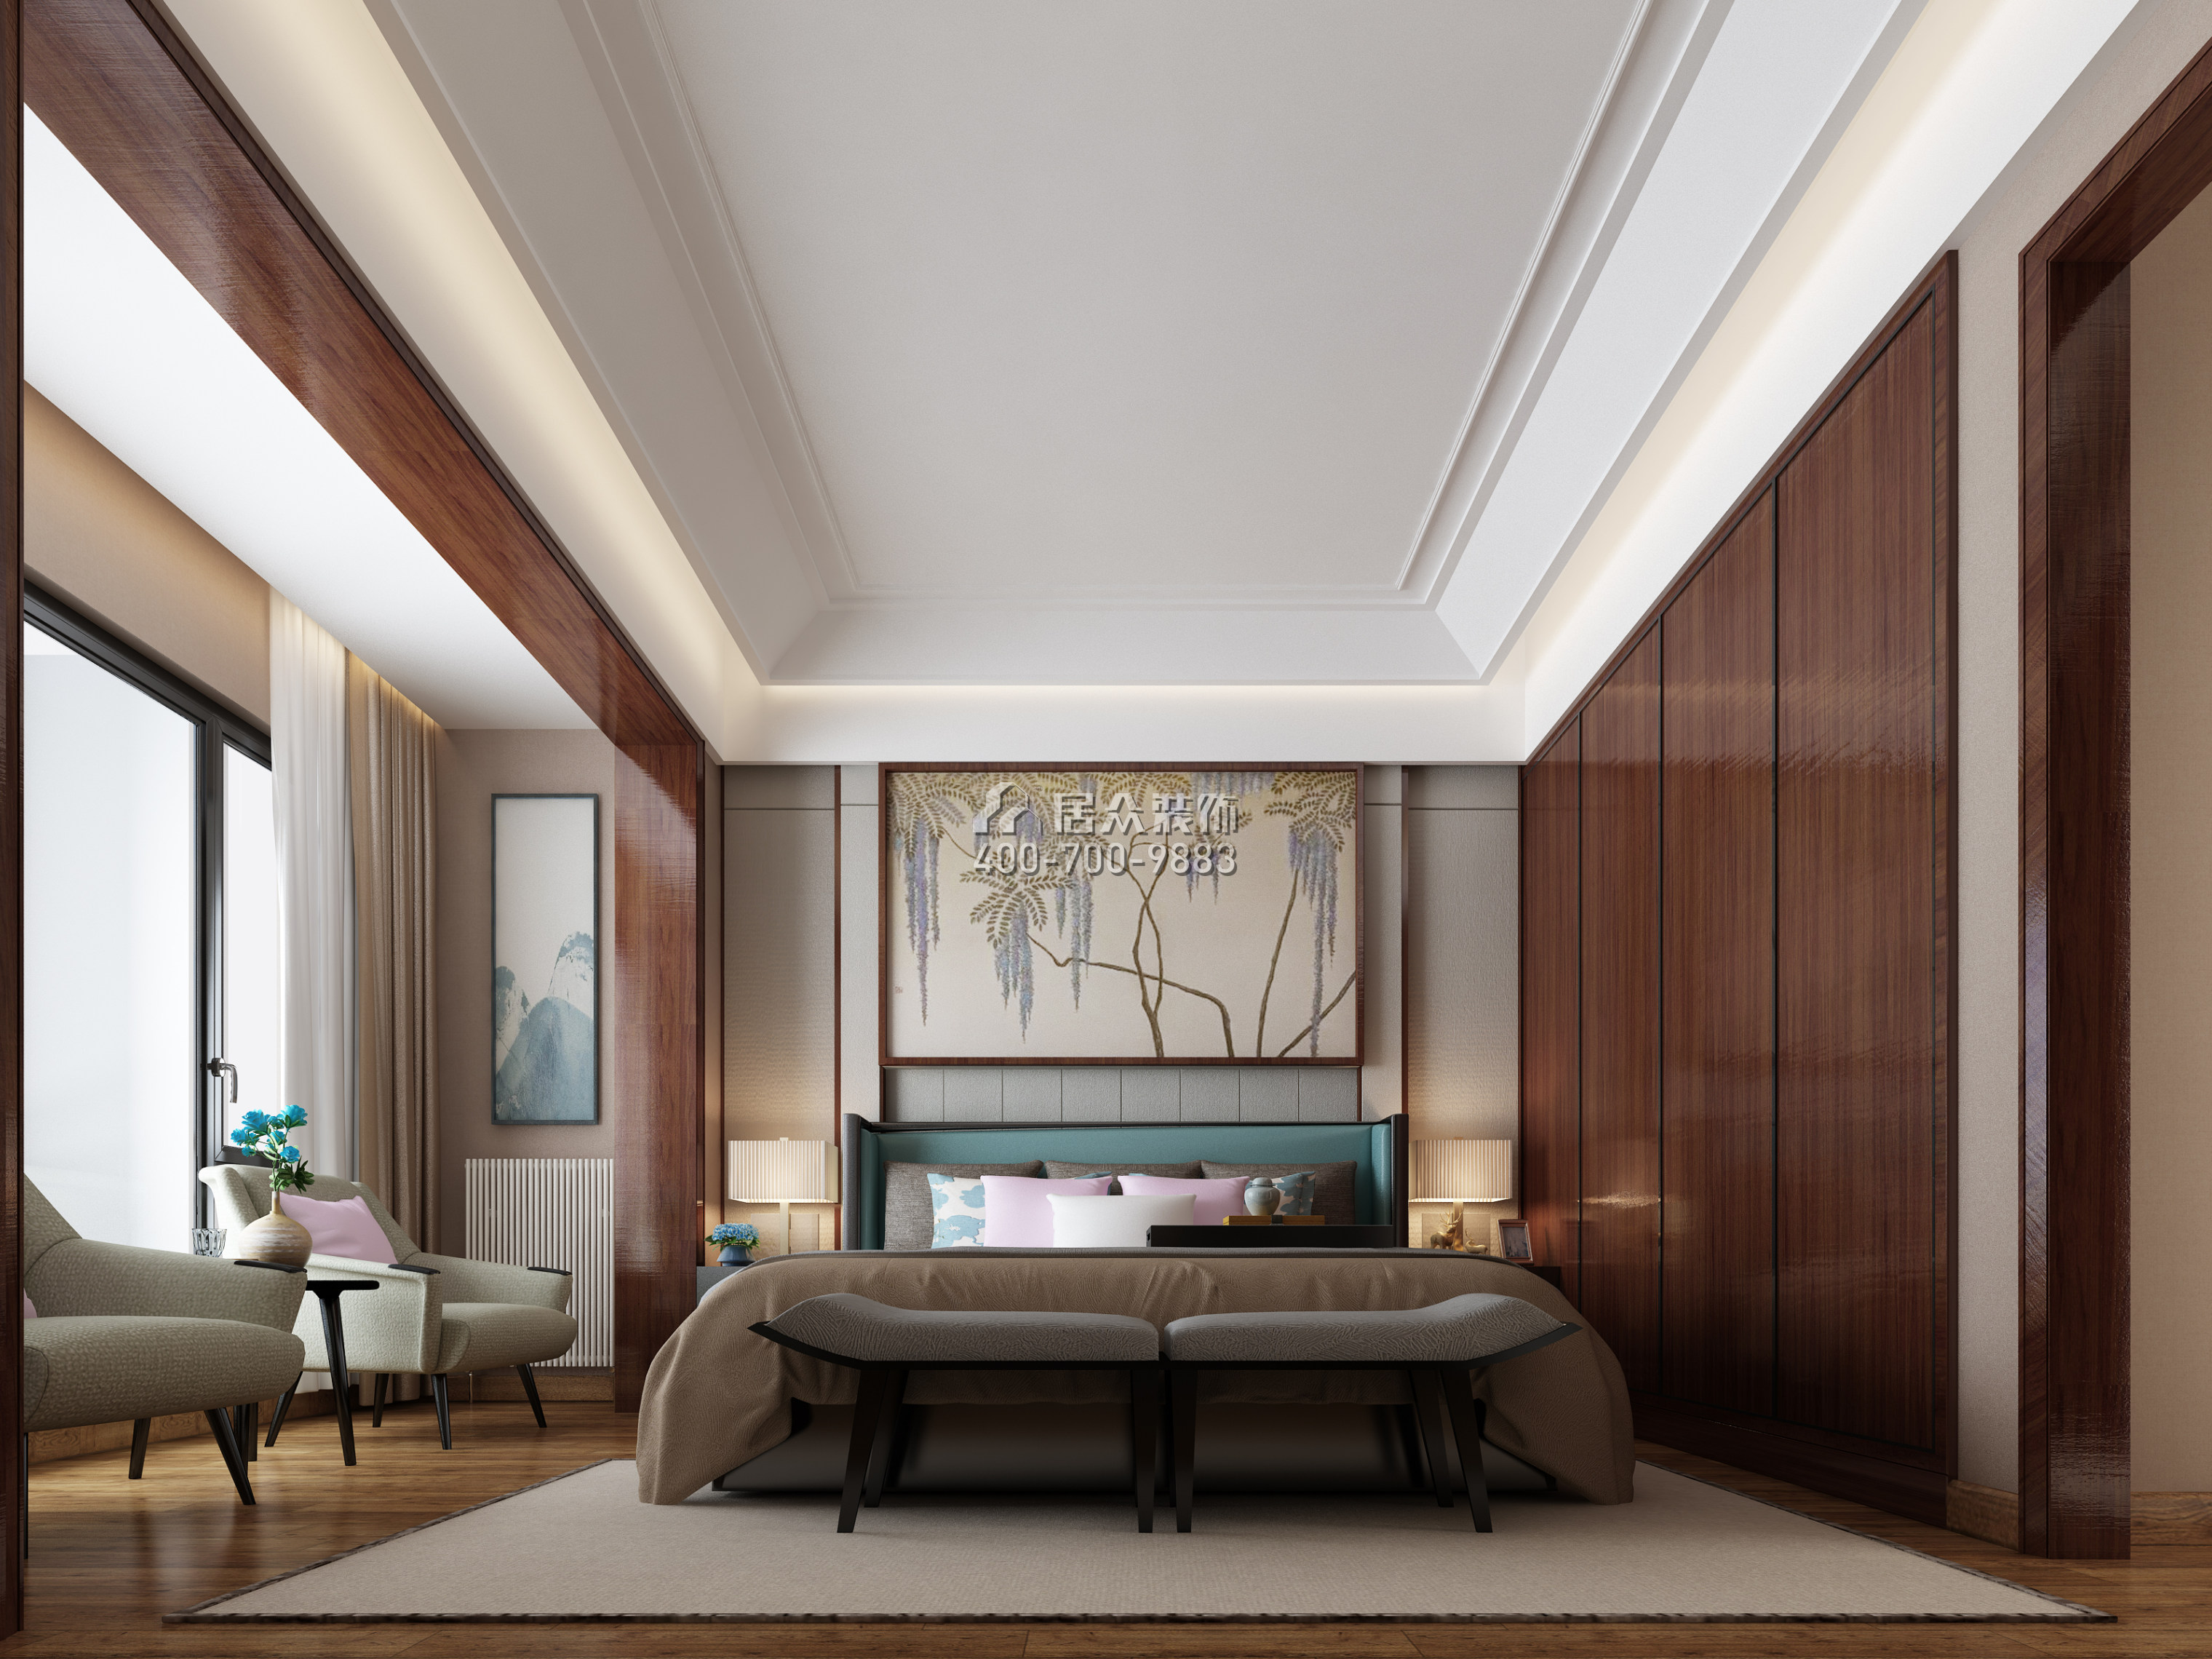 星语林·汀湘十里480平方米中式风格别墅户型卧室装修效果图